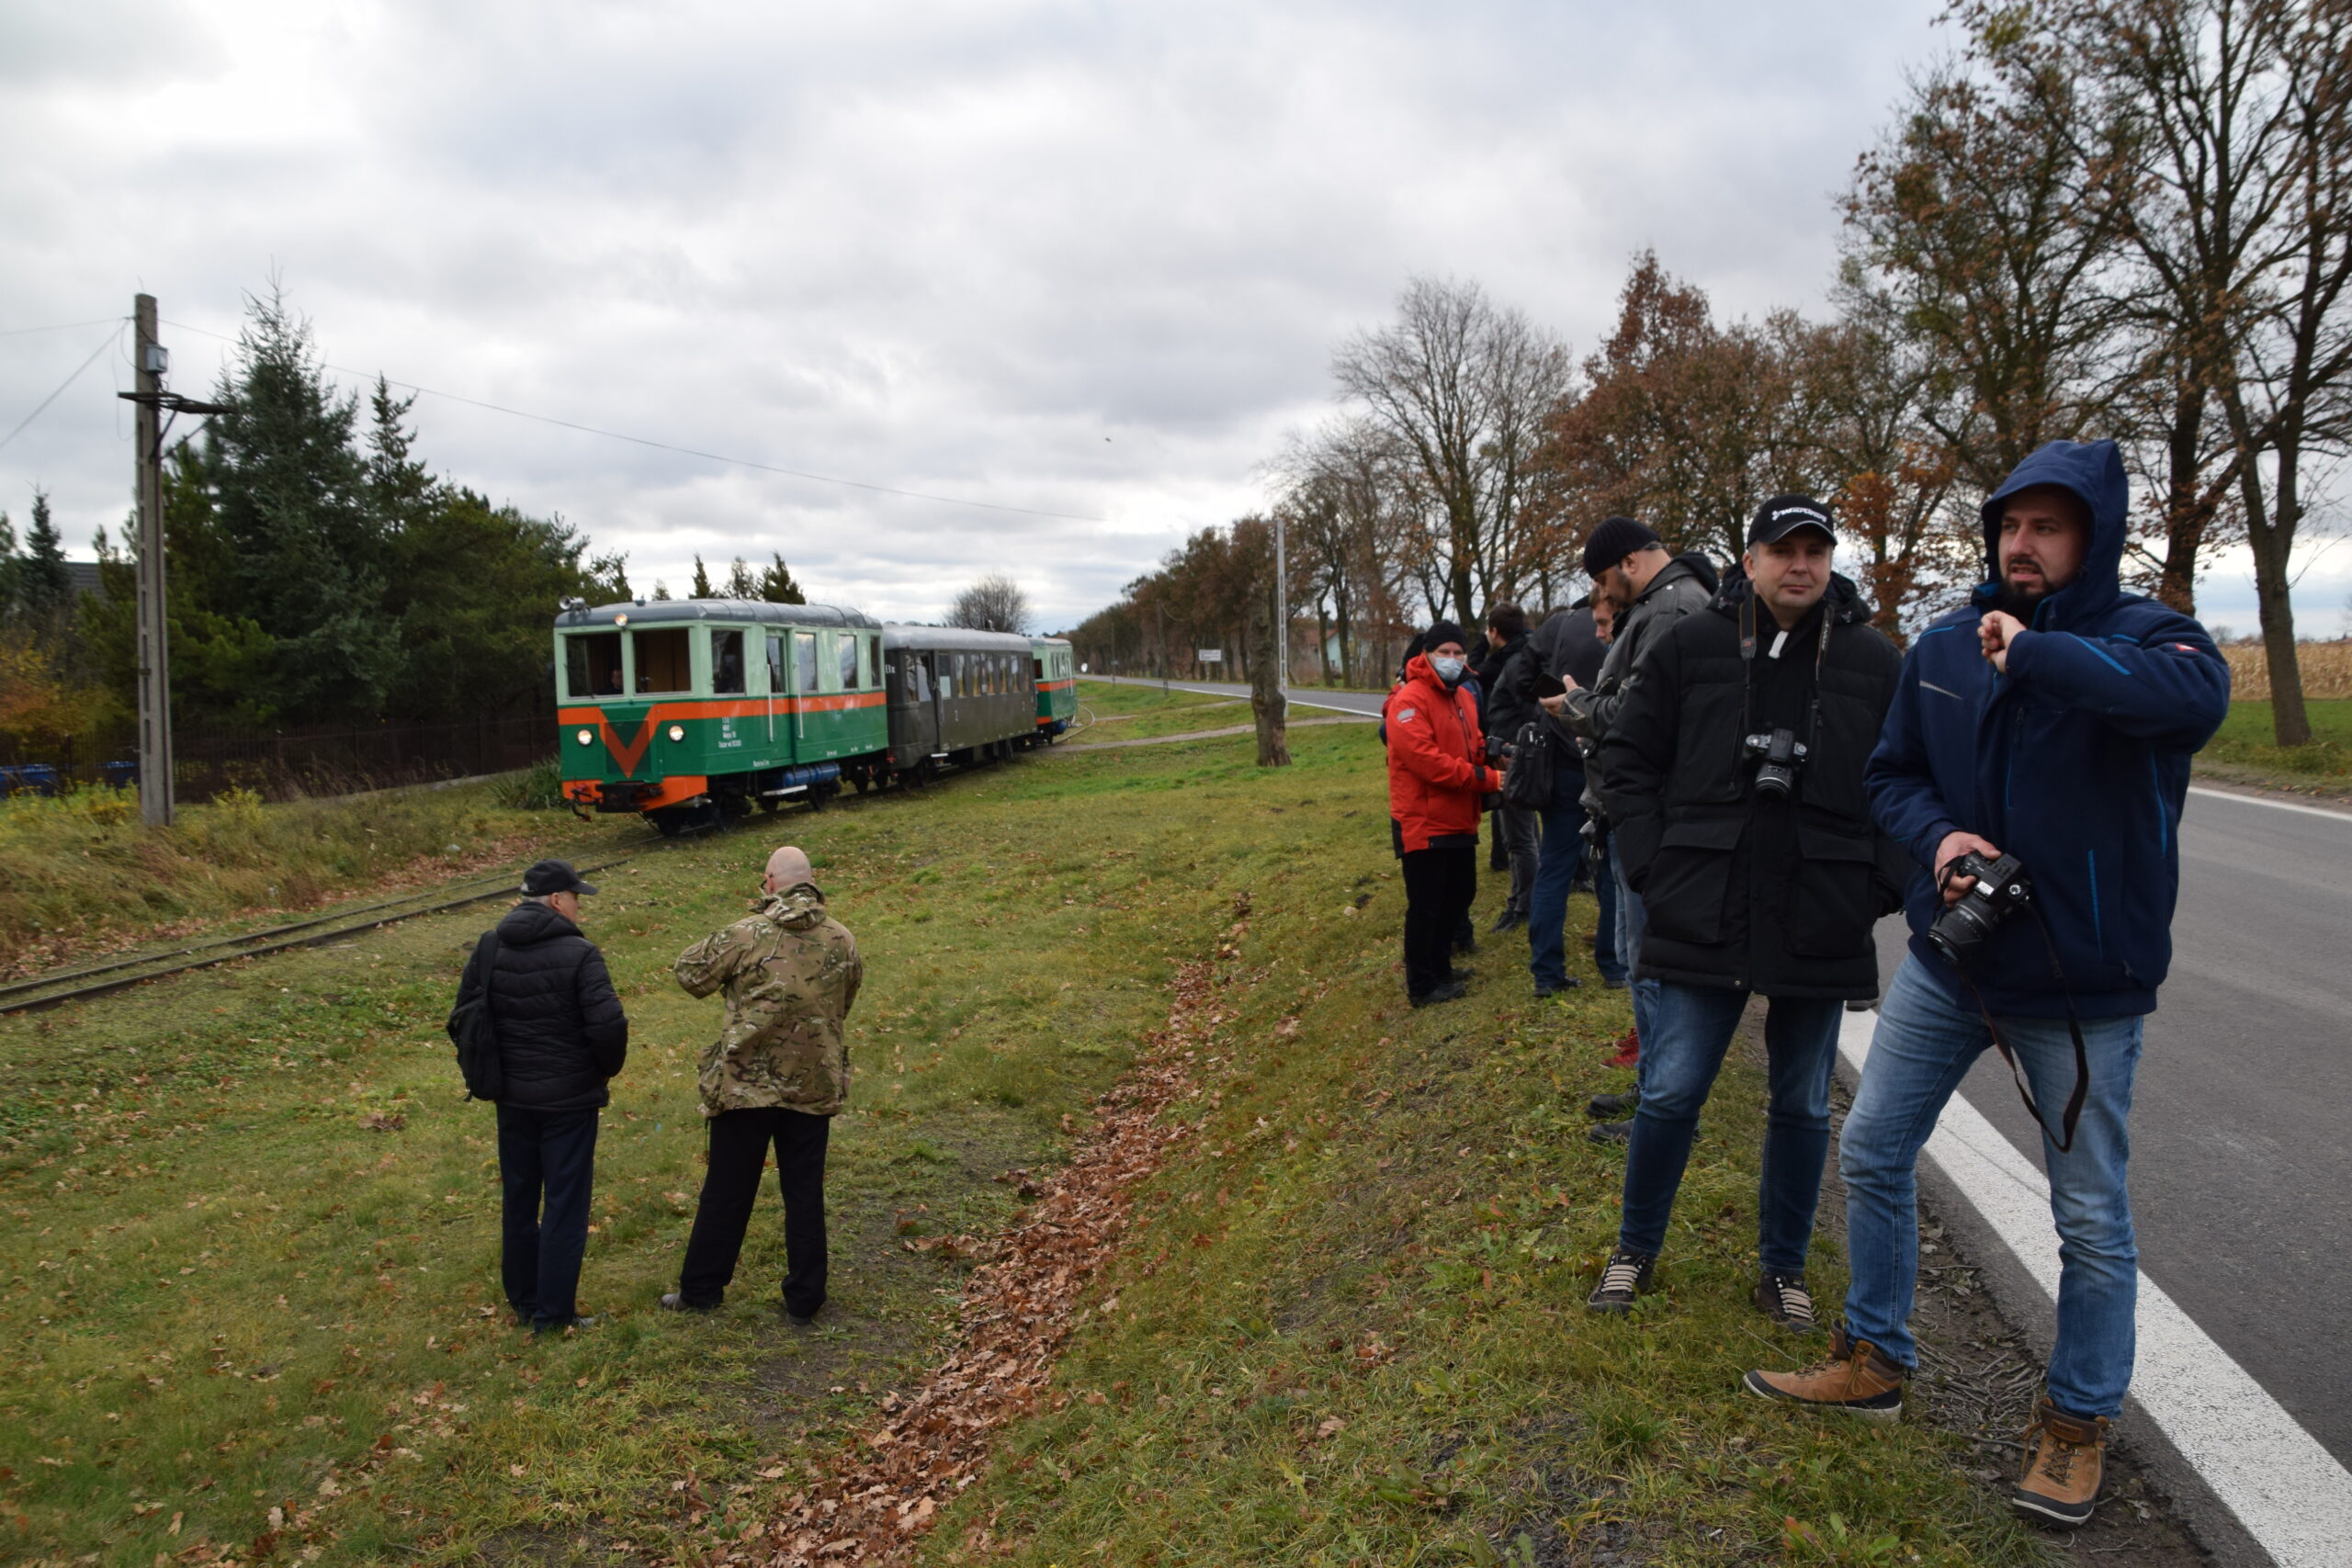 Grupa osób stoi na trawiastym terenie obok torów kolejowych, skierowani są w stronę nadjeżdżającego pociągu. Pociąg składa się z zielonych wagonów, które są charakterystyczne dla kolei wąskotorowej. Niektórzy z obecnych mają w rękach aparaty fotograficzne, prawdopodobnie aby uwiecznić wydarzenie.